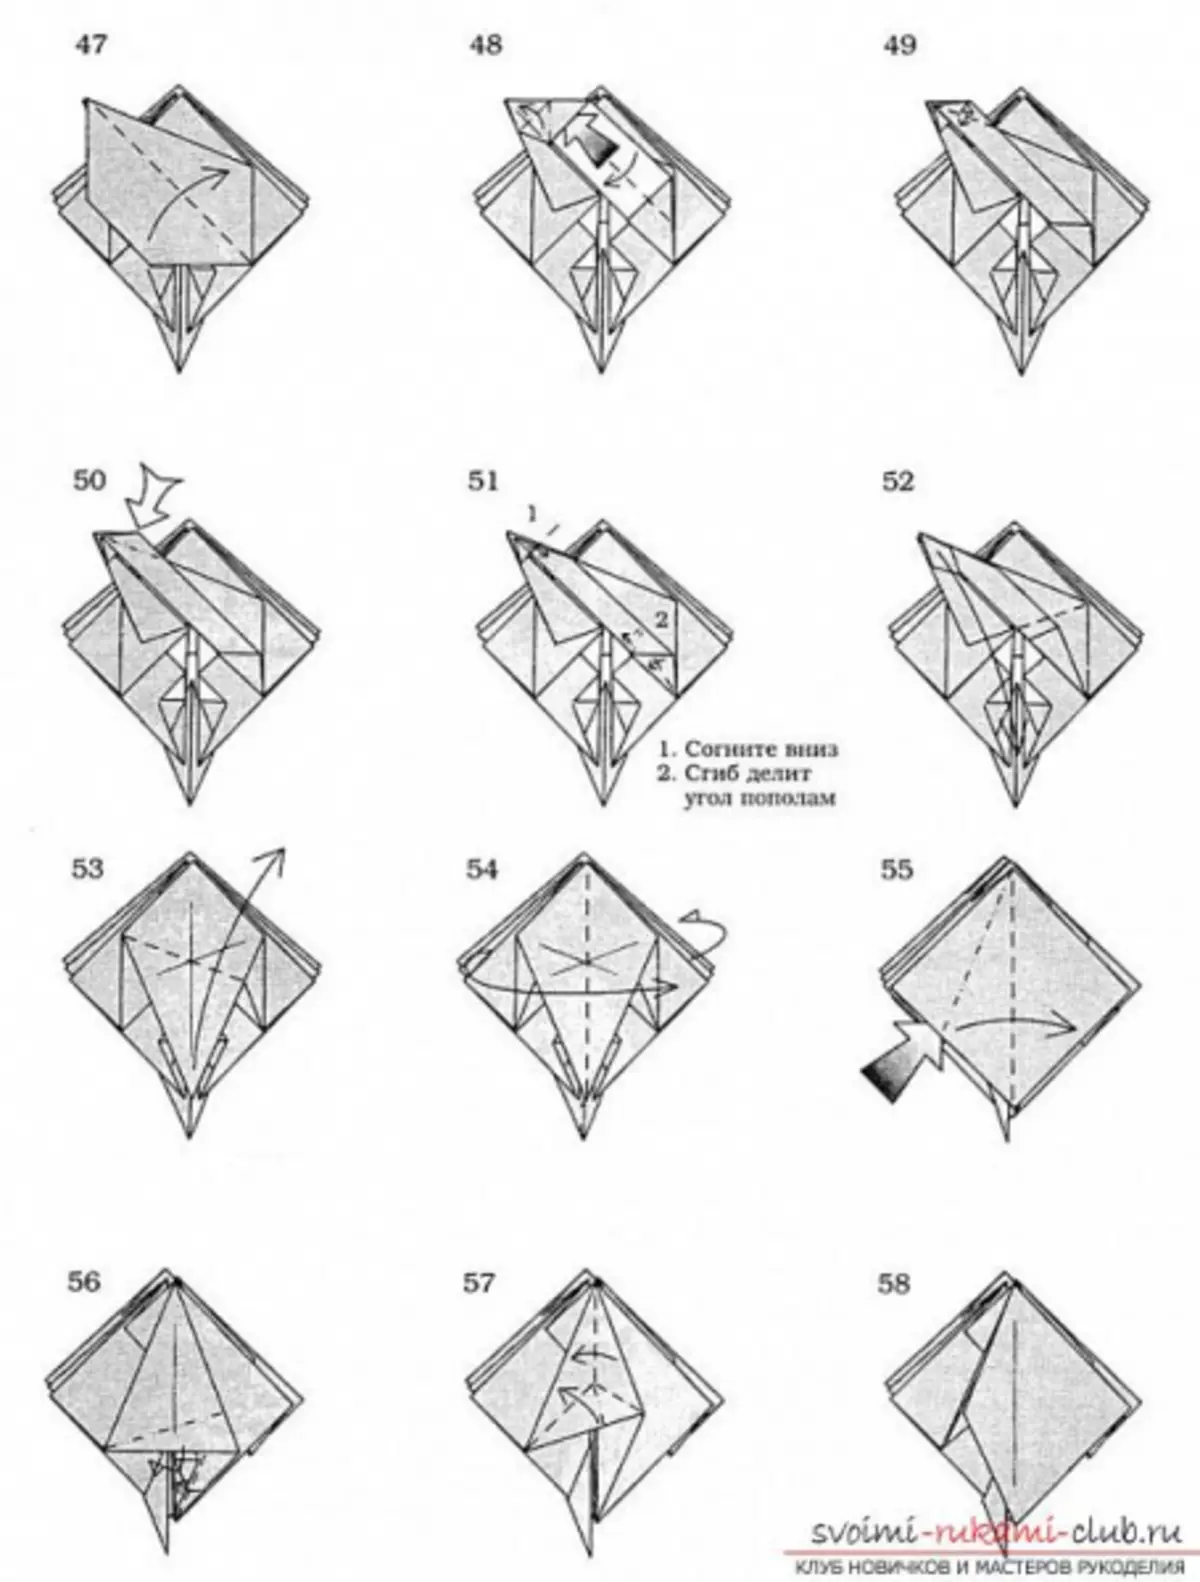 Қағаздан оригами айдаһар: схемасы мен бейнесін қалай жасауға болады